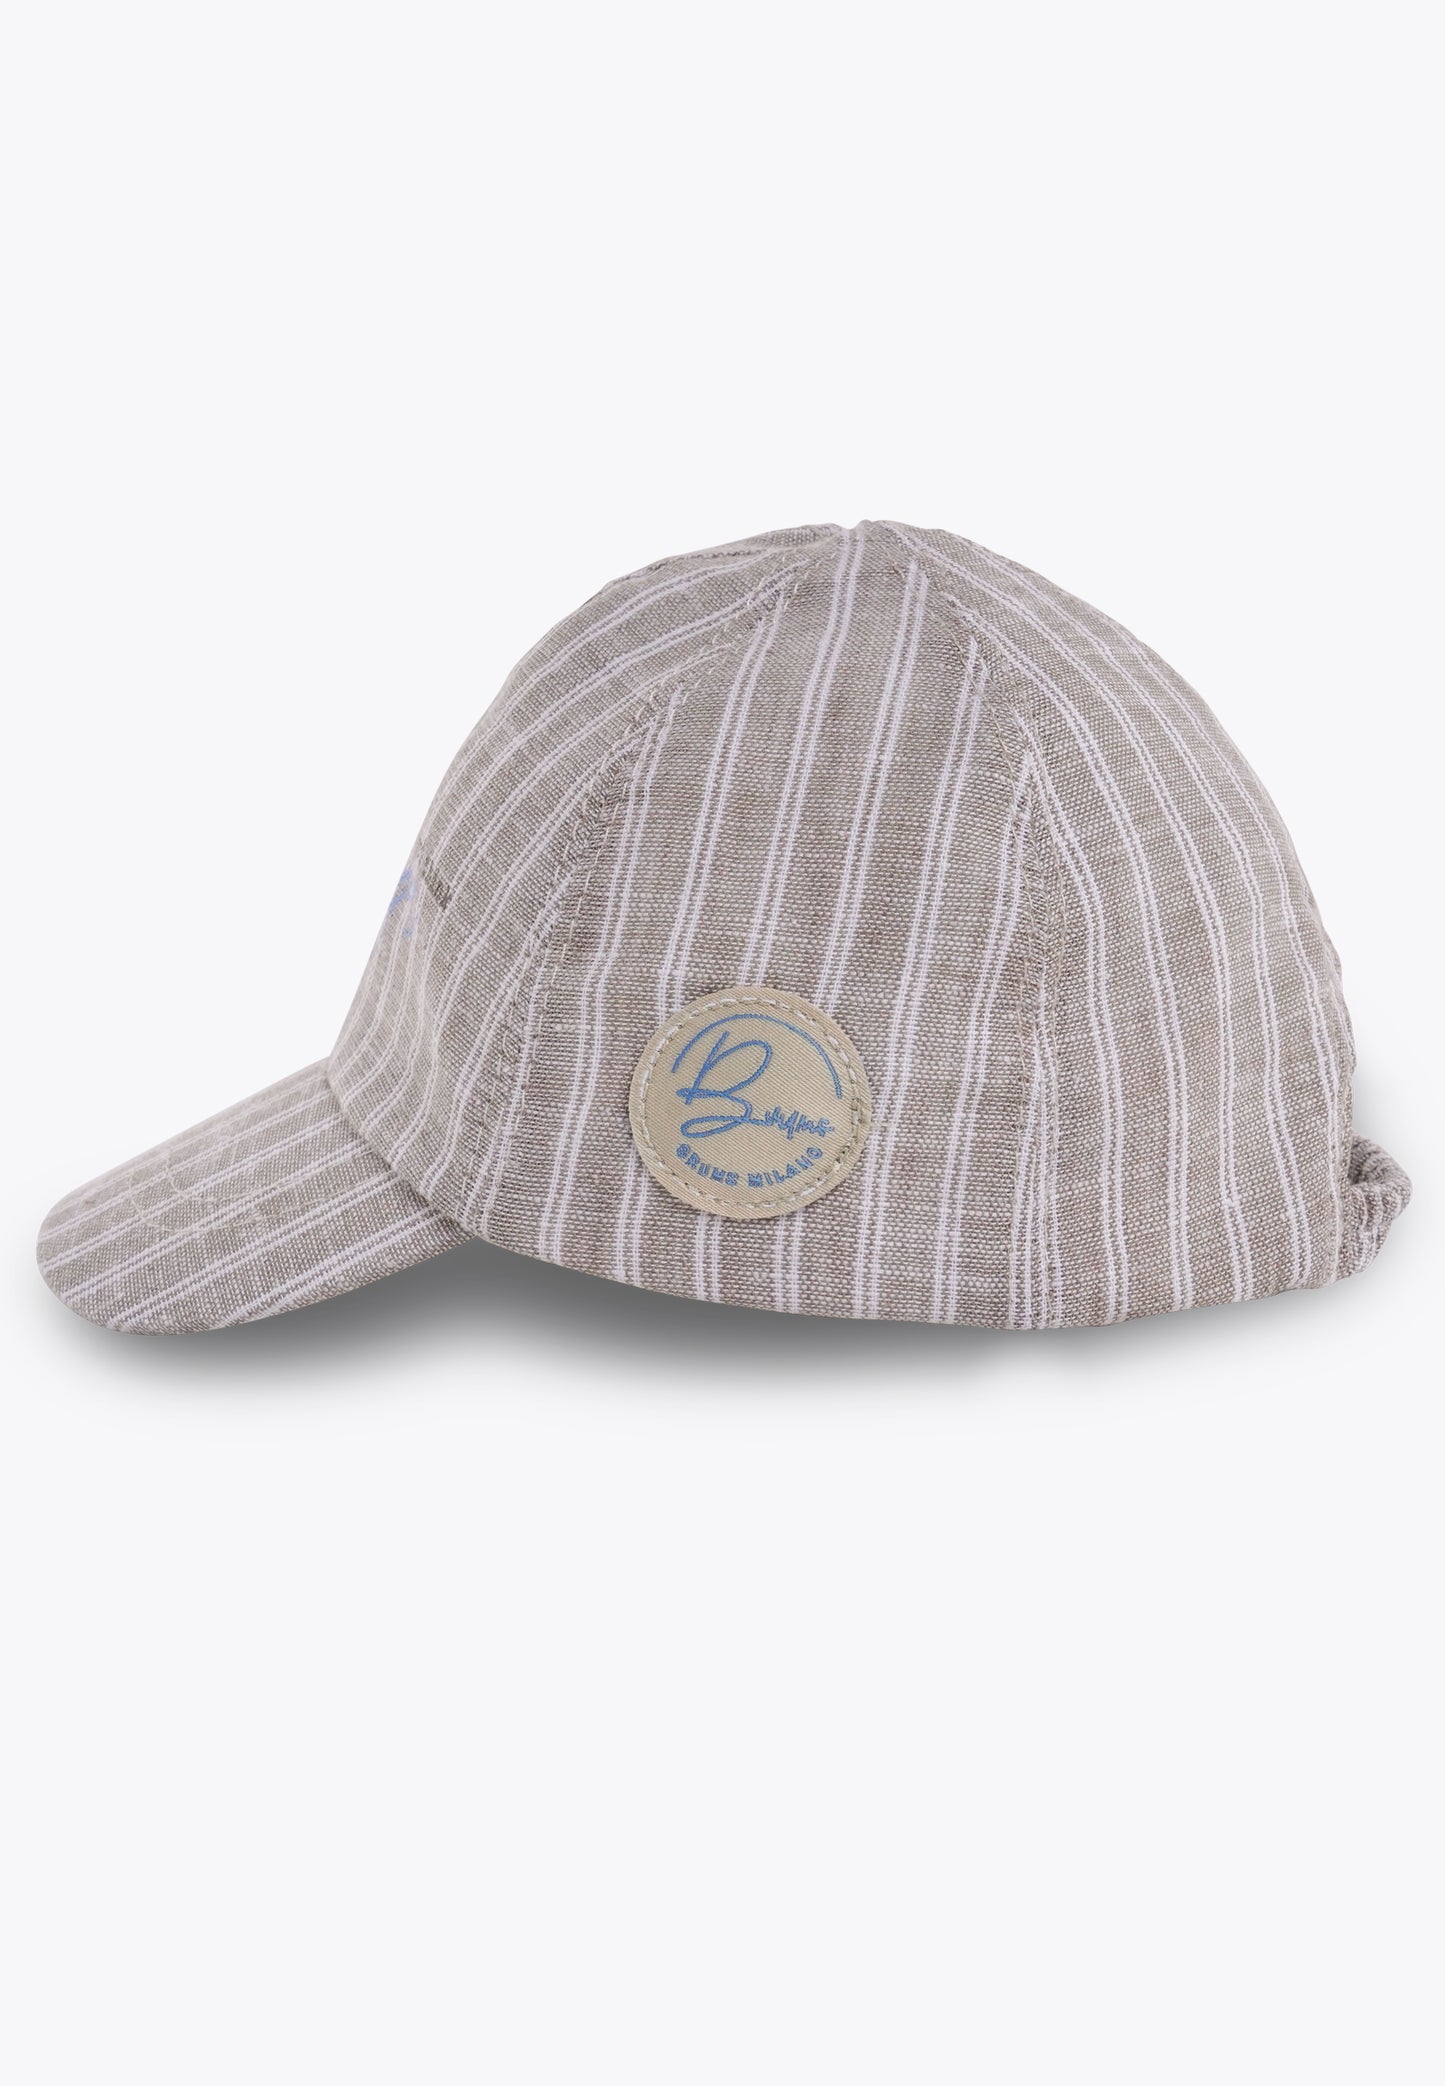 "Jockey" Hat in Striped Linen Blend